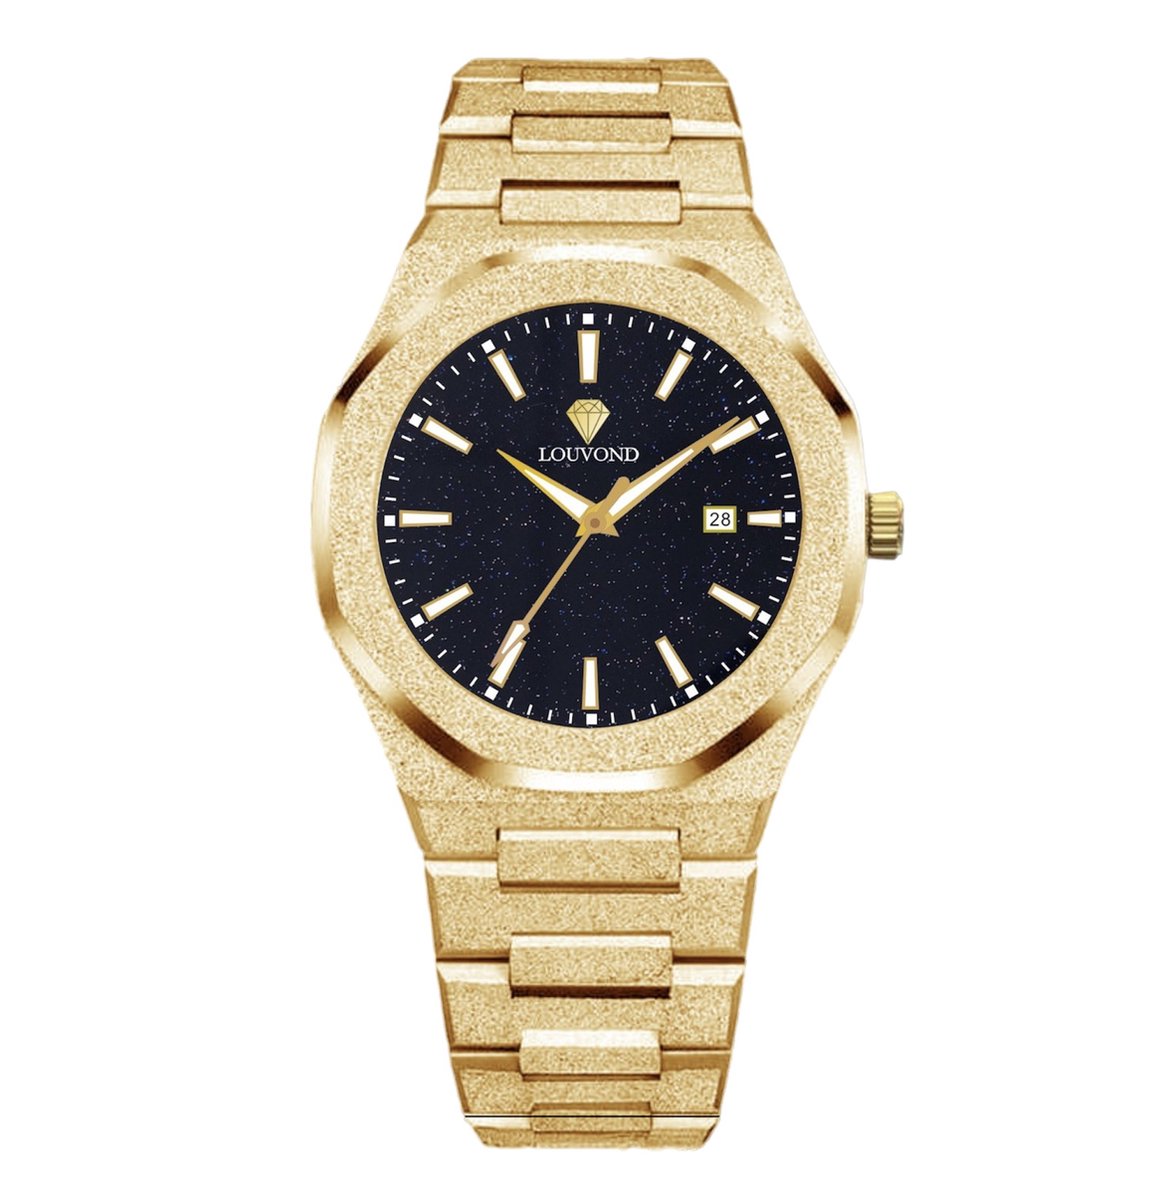 Louvond - Classique Frosted Gold - Luxe mannen horloge - Polshorloge - Heren horloge - Horloge mannen - 40MM - Roestvrij staal - Saffierglas - Waterdicht - Ultra dun